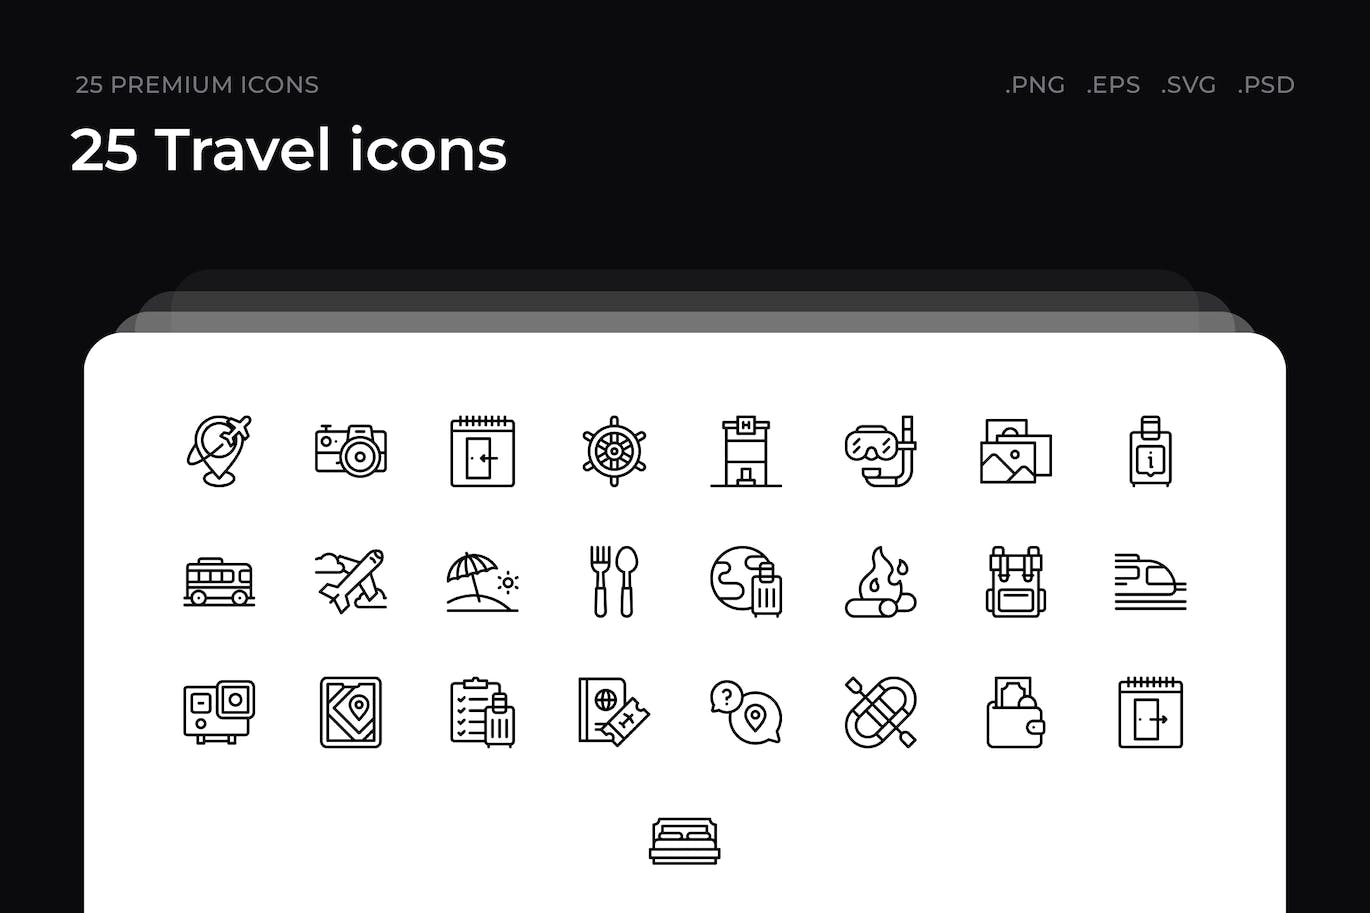 25枚旅行主题简约线条矢量图标 25 Travel icons 图标素材 第1张